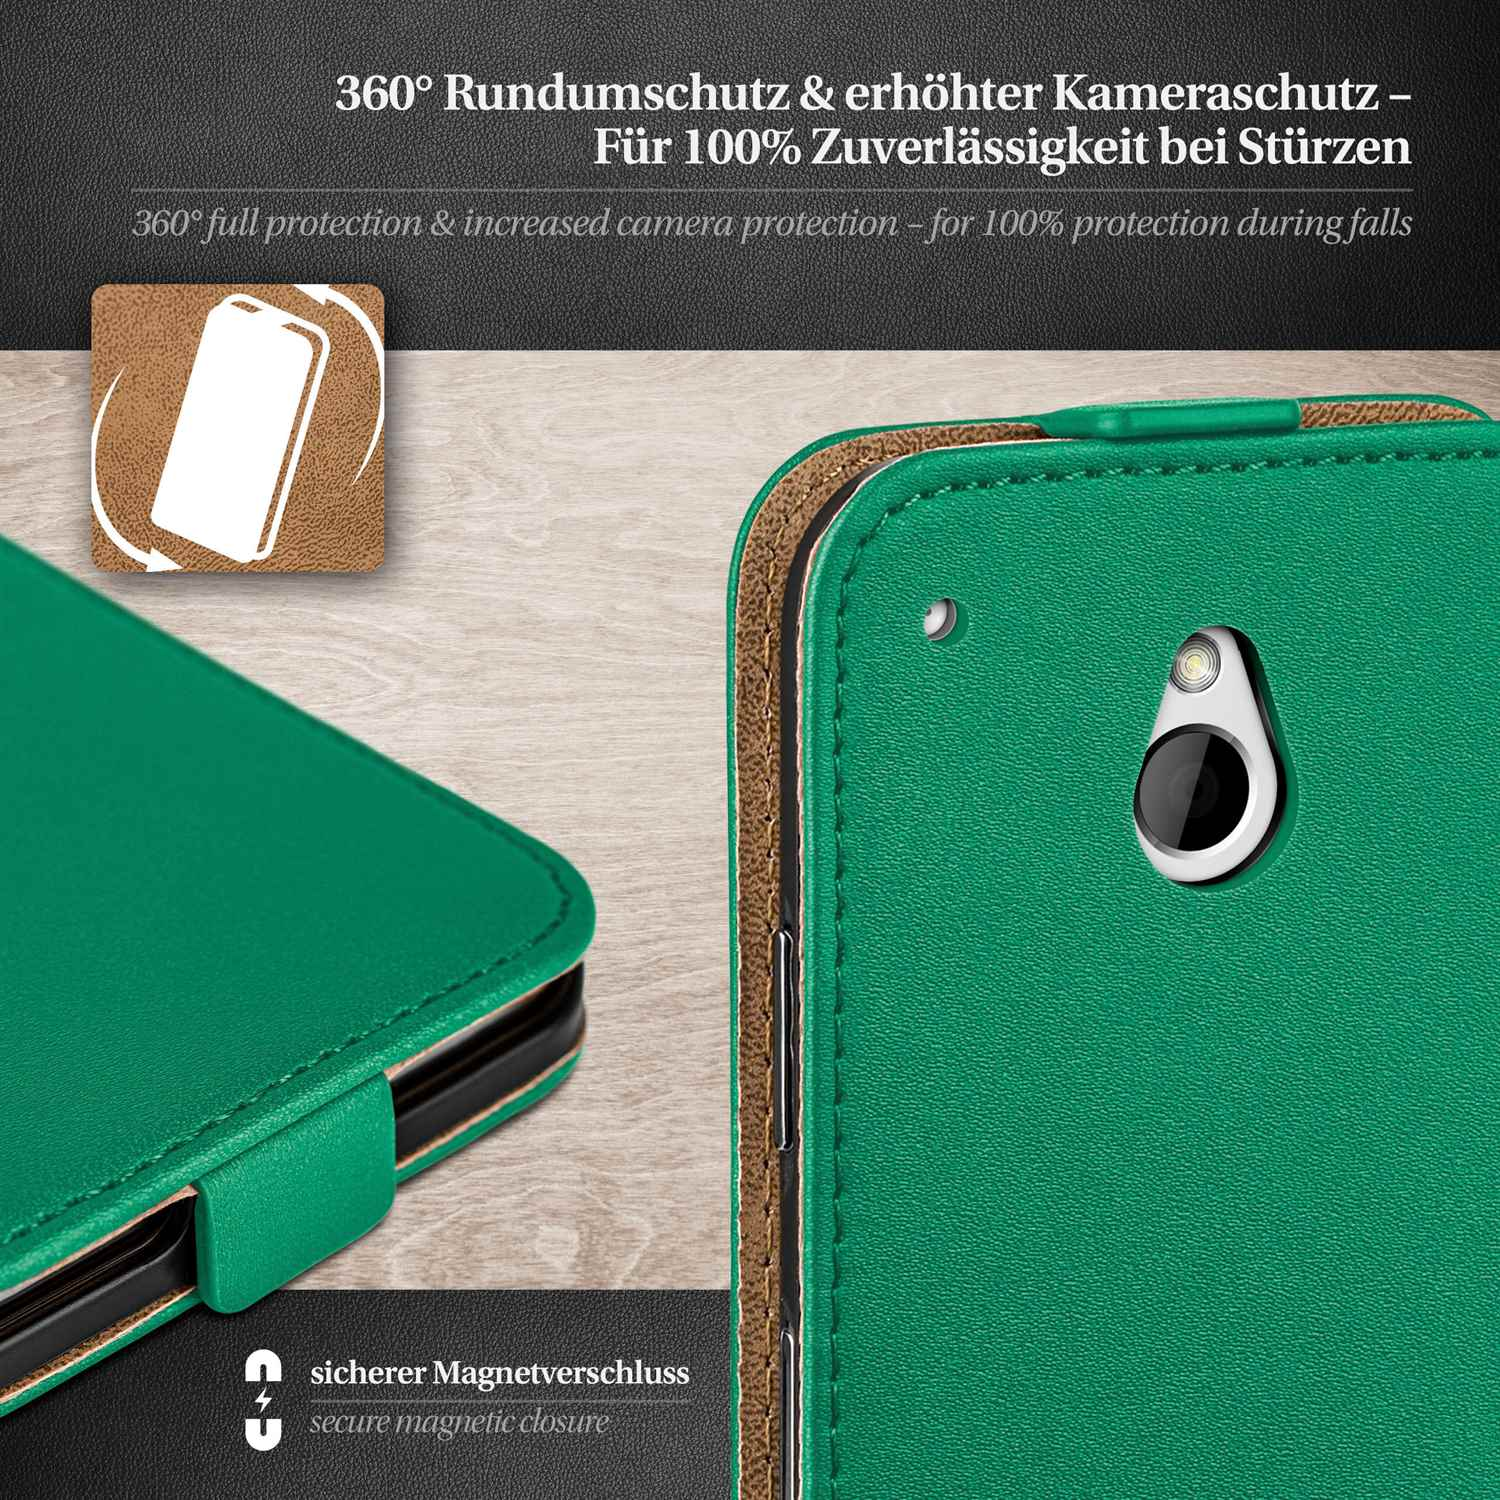 Cover, Emerald-Green Mini, One Case, MOEX Flip Flip HTC,